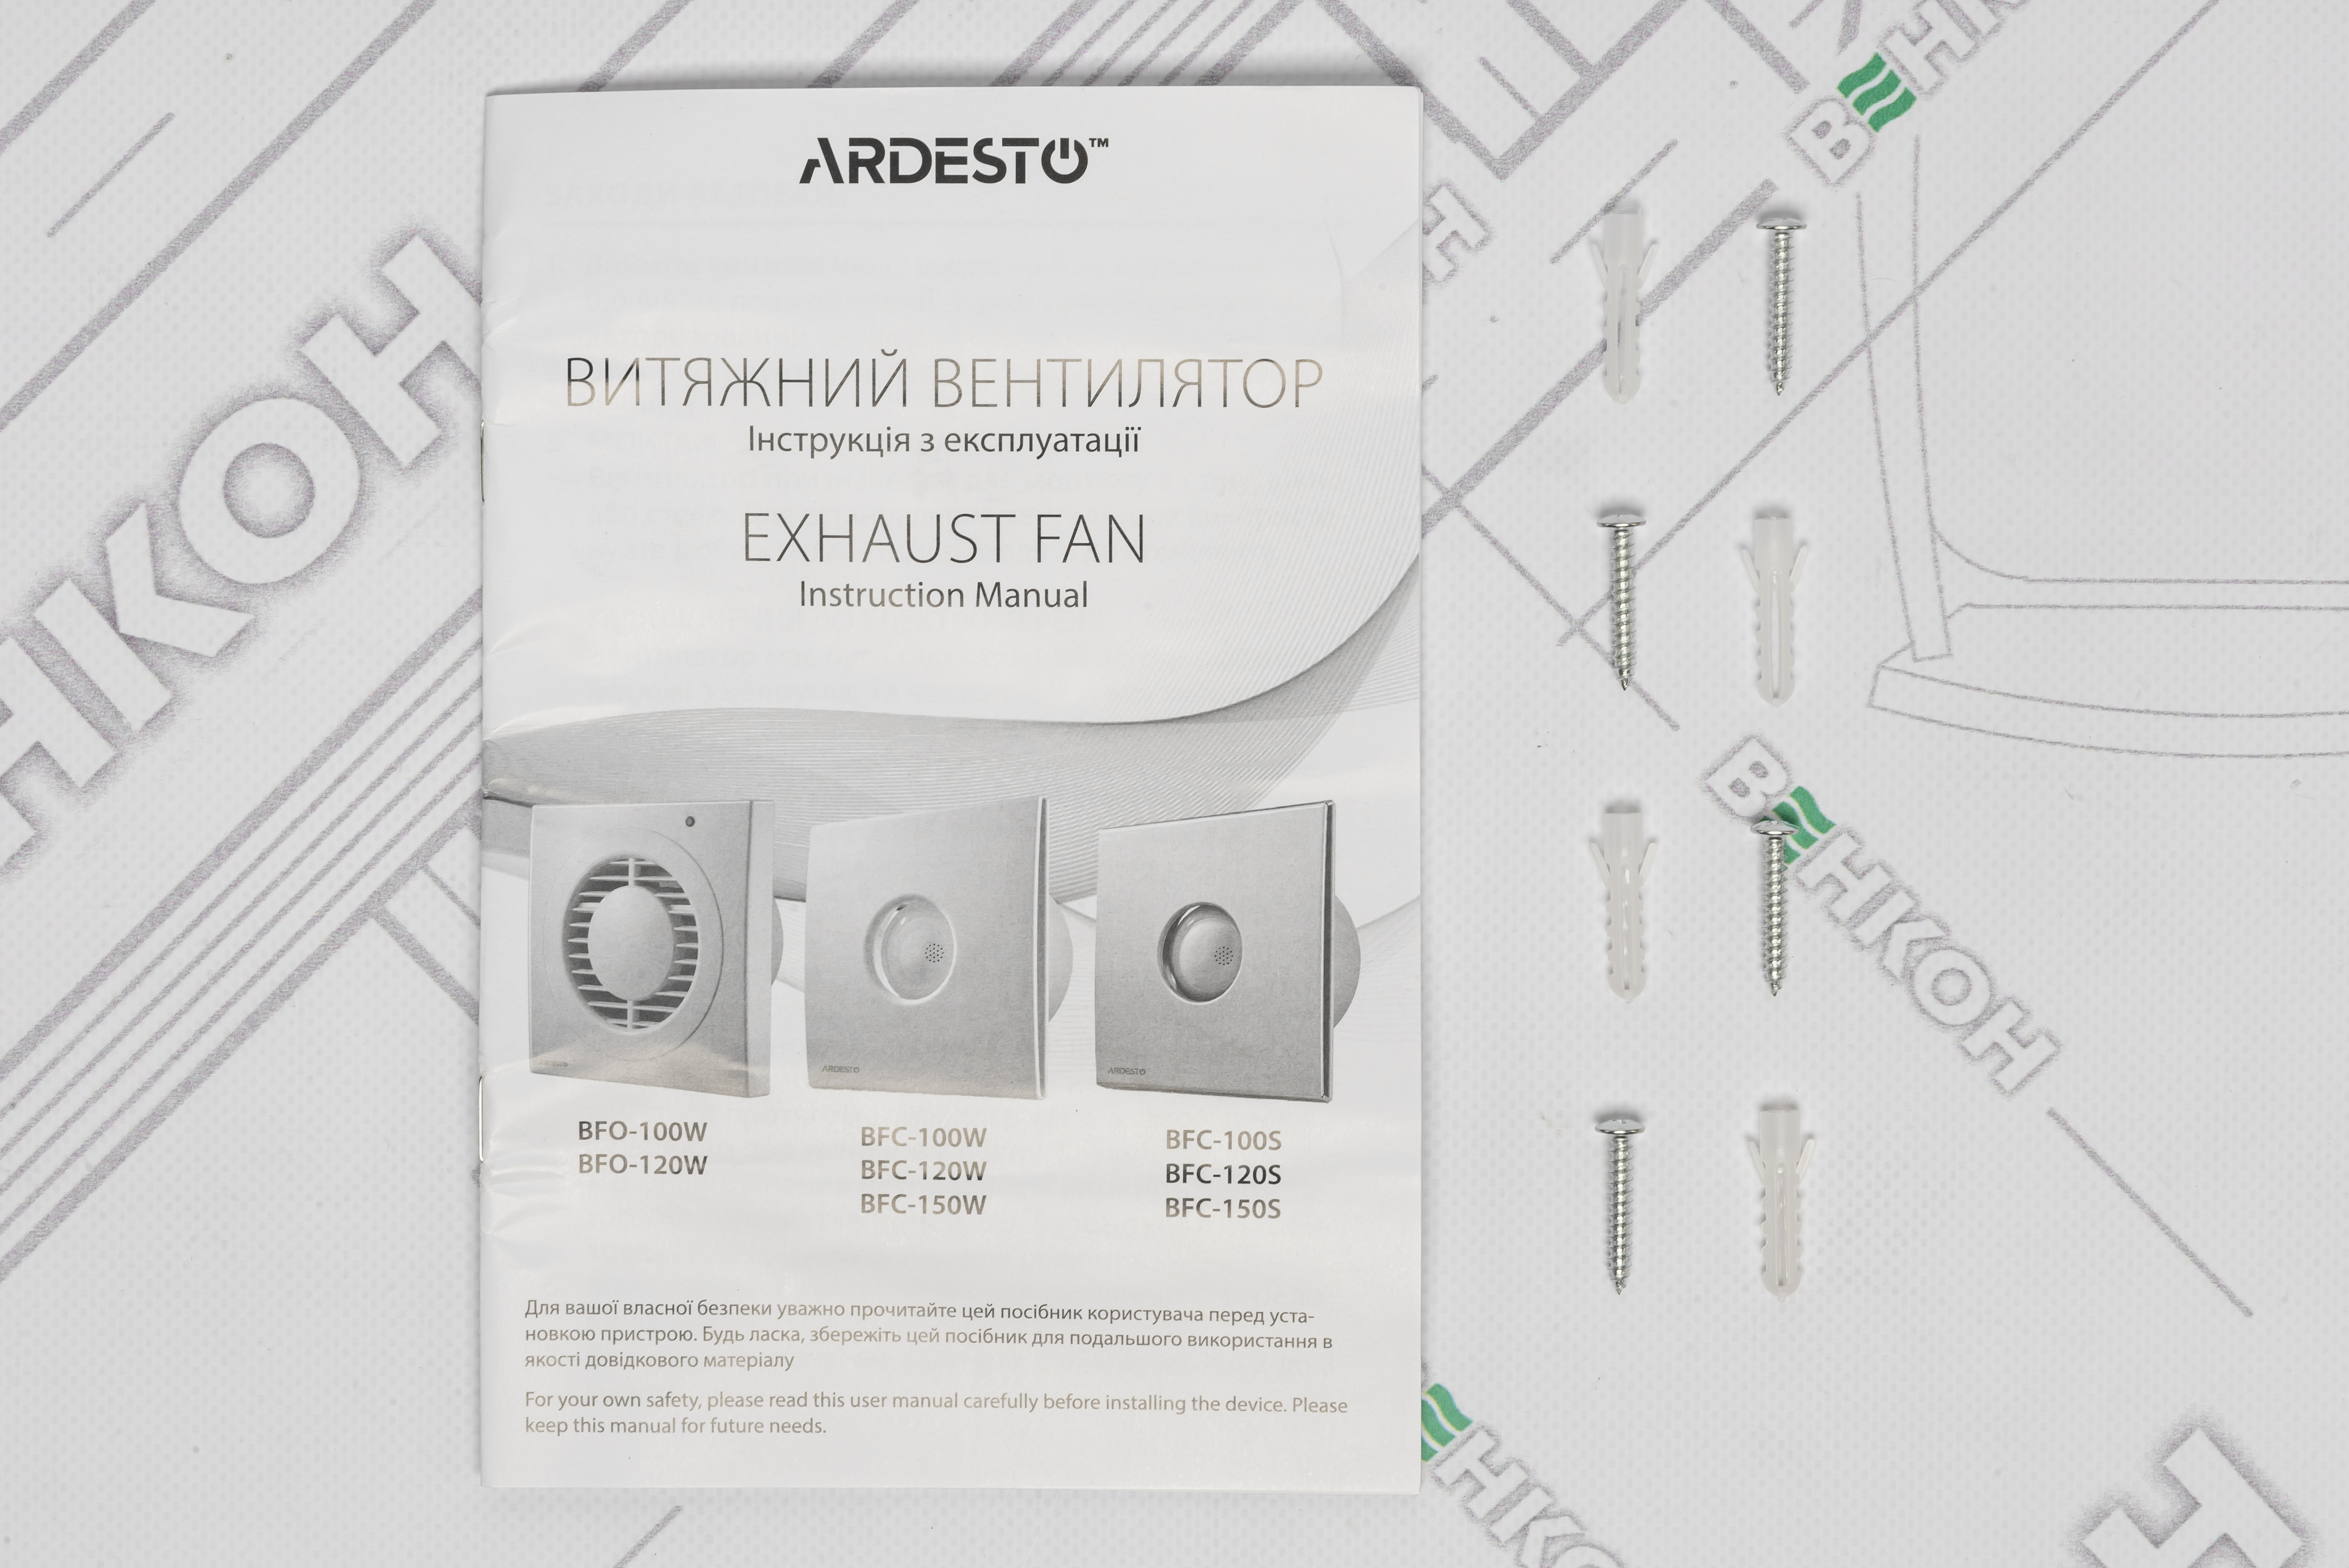 Вытяжной вентилятор Ardesto BFC-100W обзор - фото 11